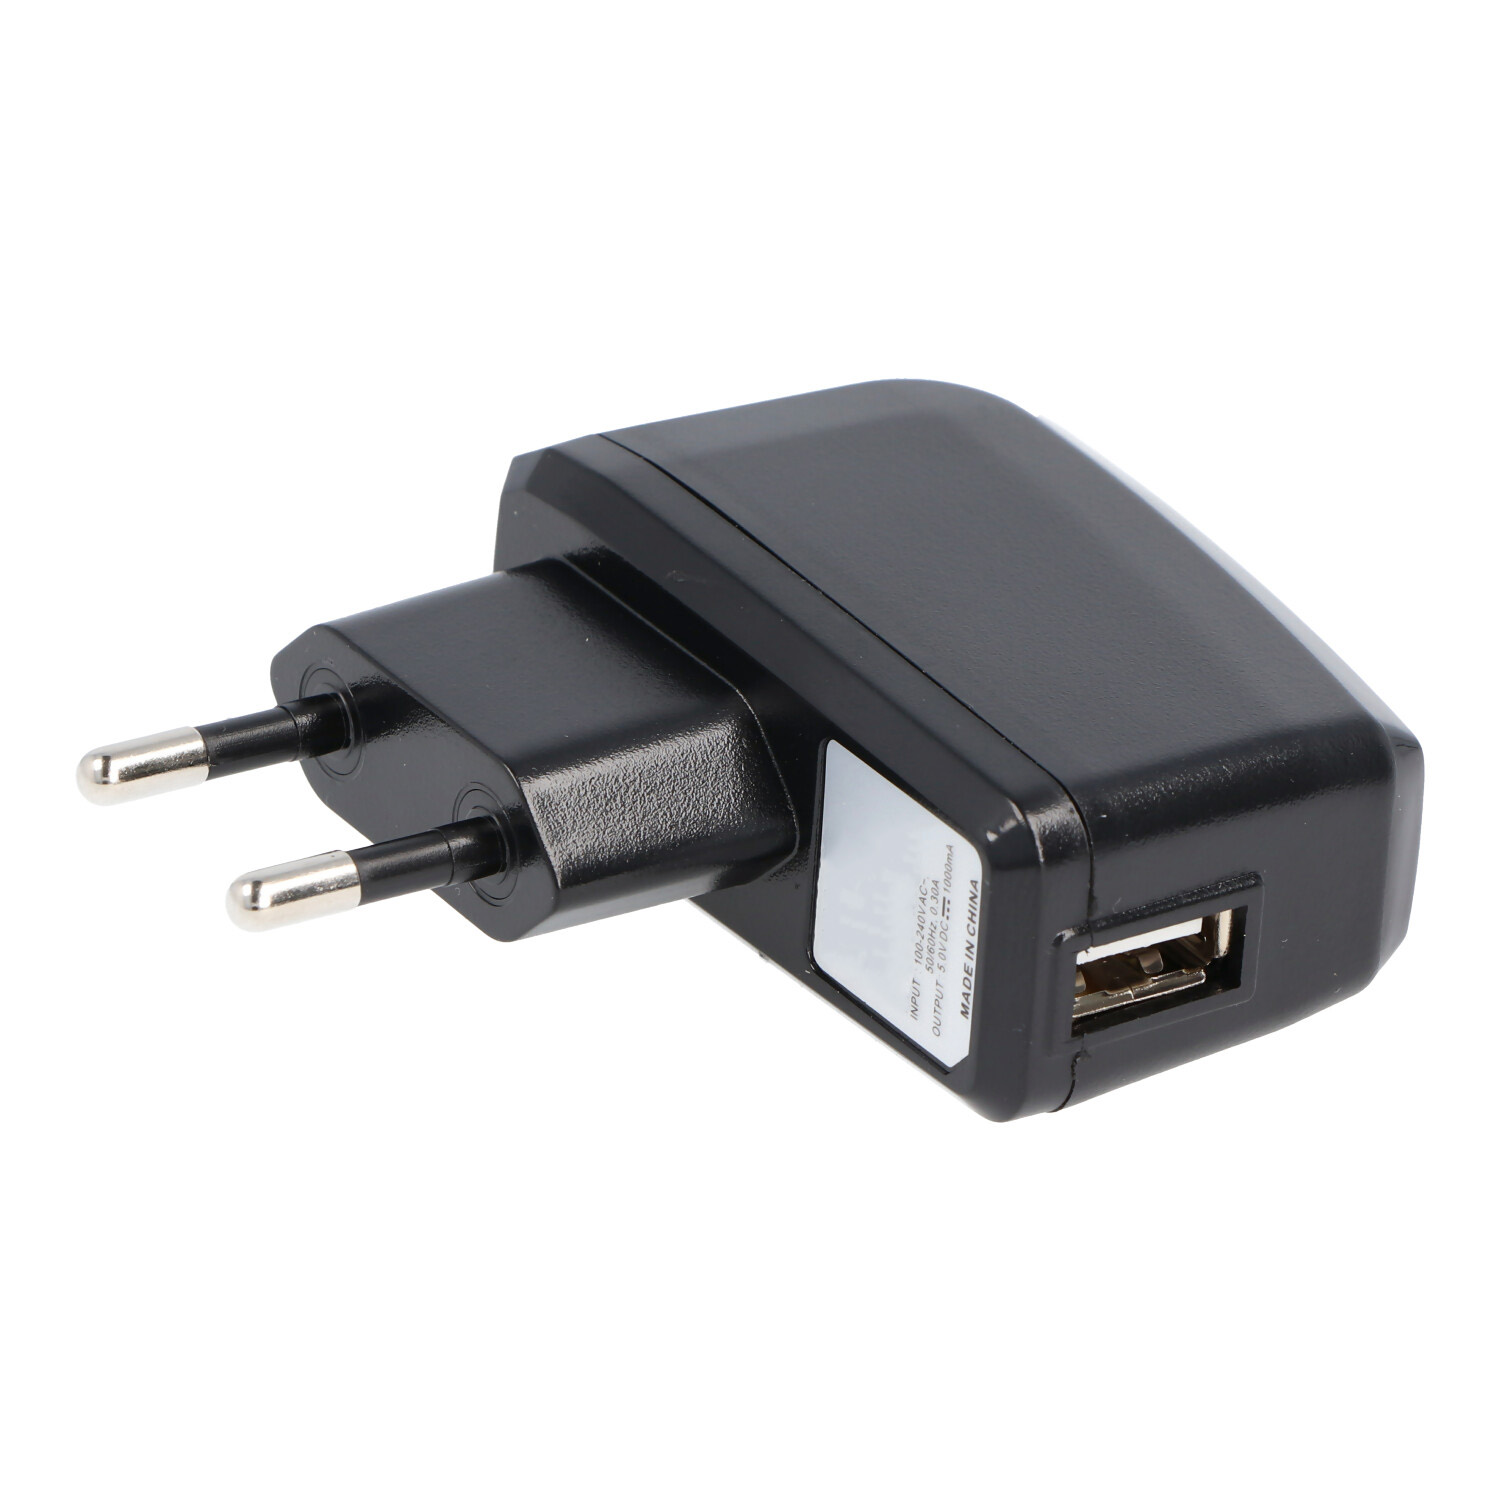 USB Ladegerät mit 1A Ausgangsleistung, Ladestrom max. 1000mA